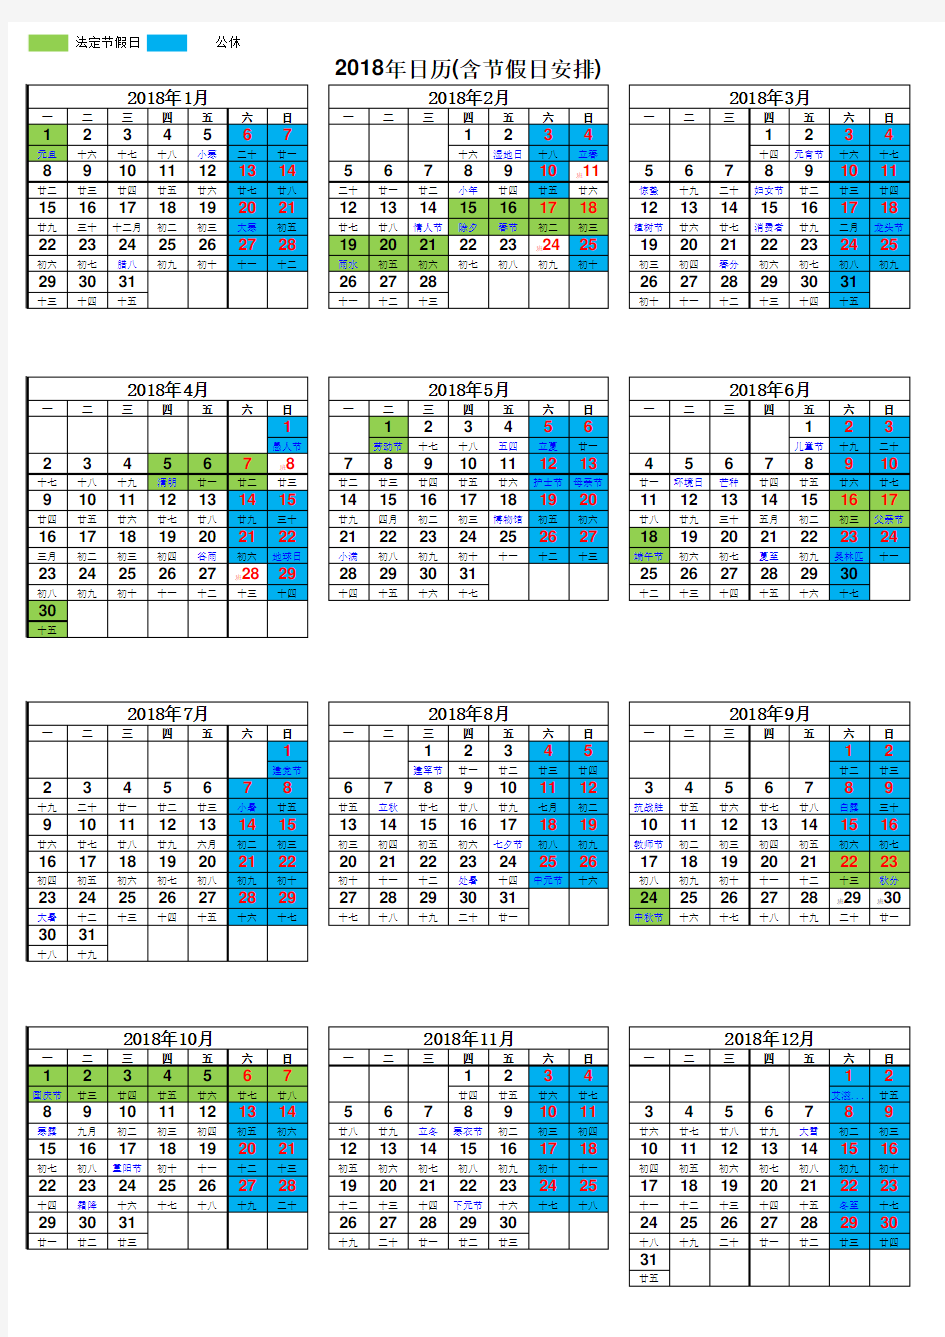 2018年日历表(含节假日安排)